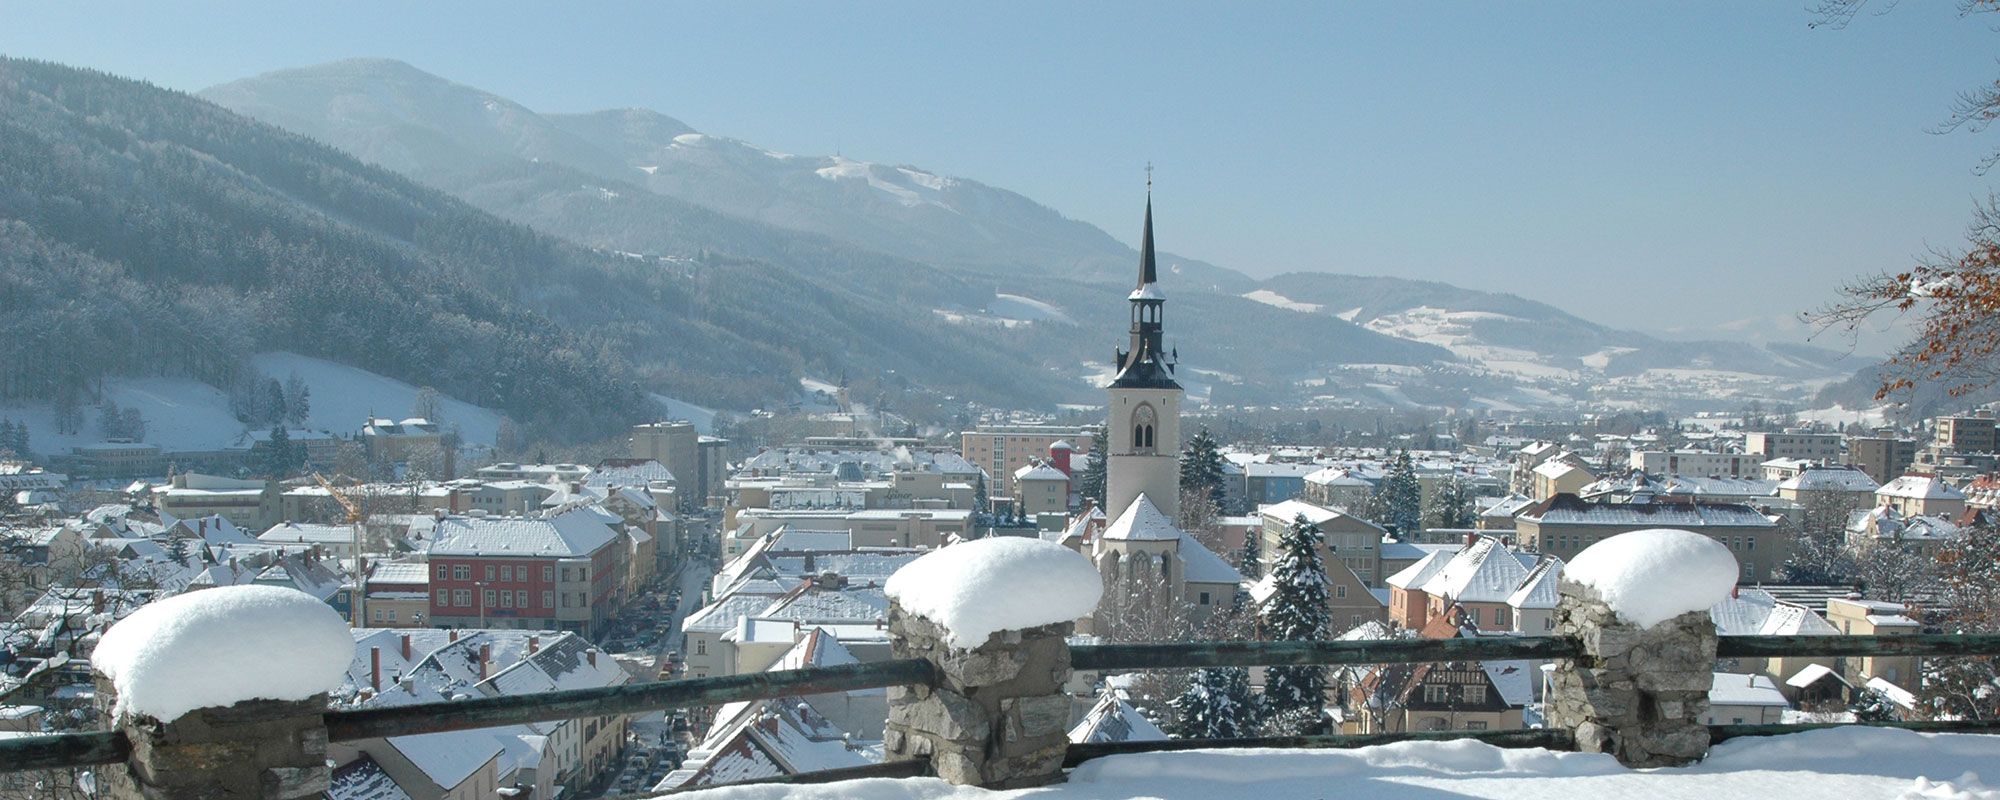 Blick auf die verschneite Stadt - Blick auf die Pfarrkirche